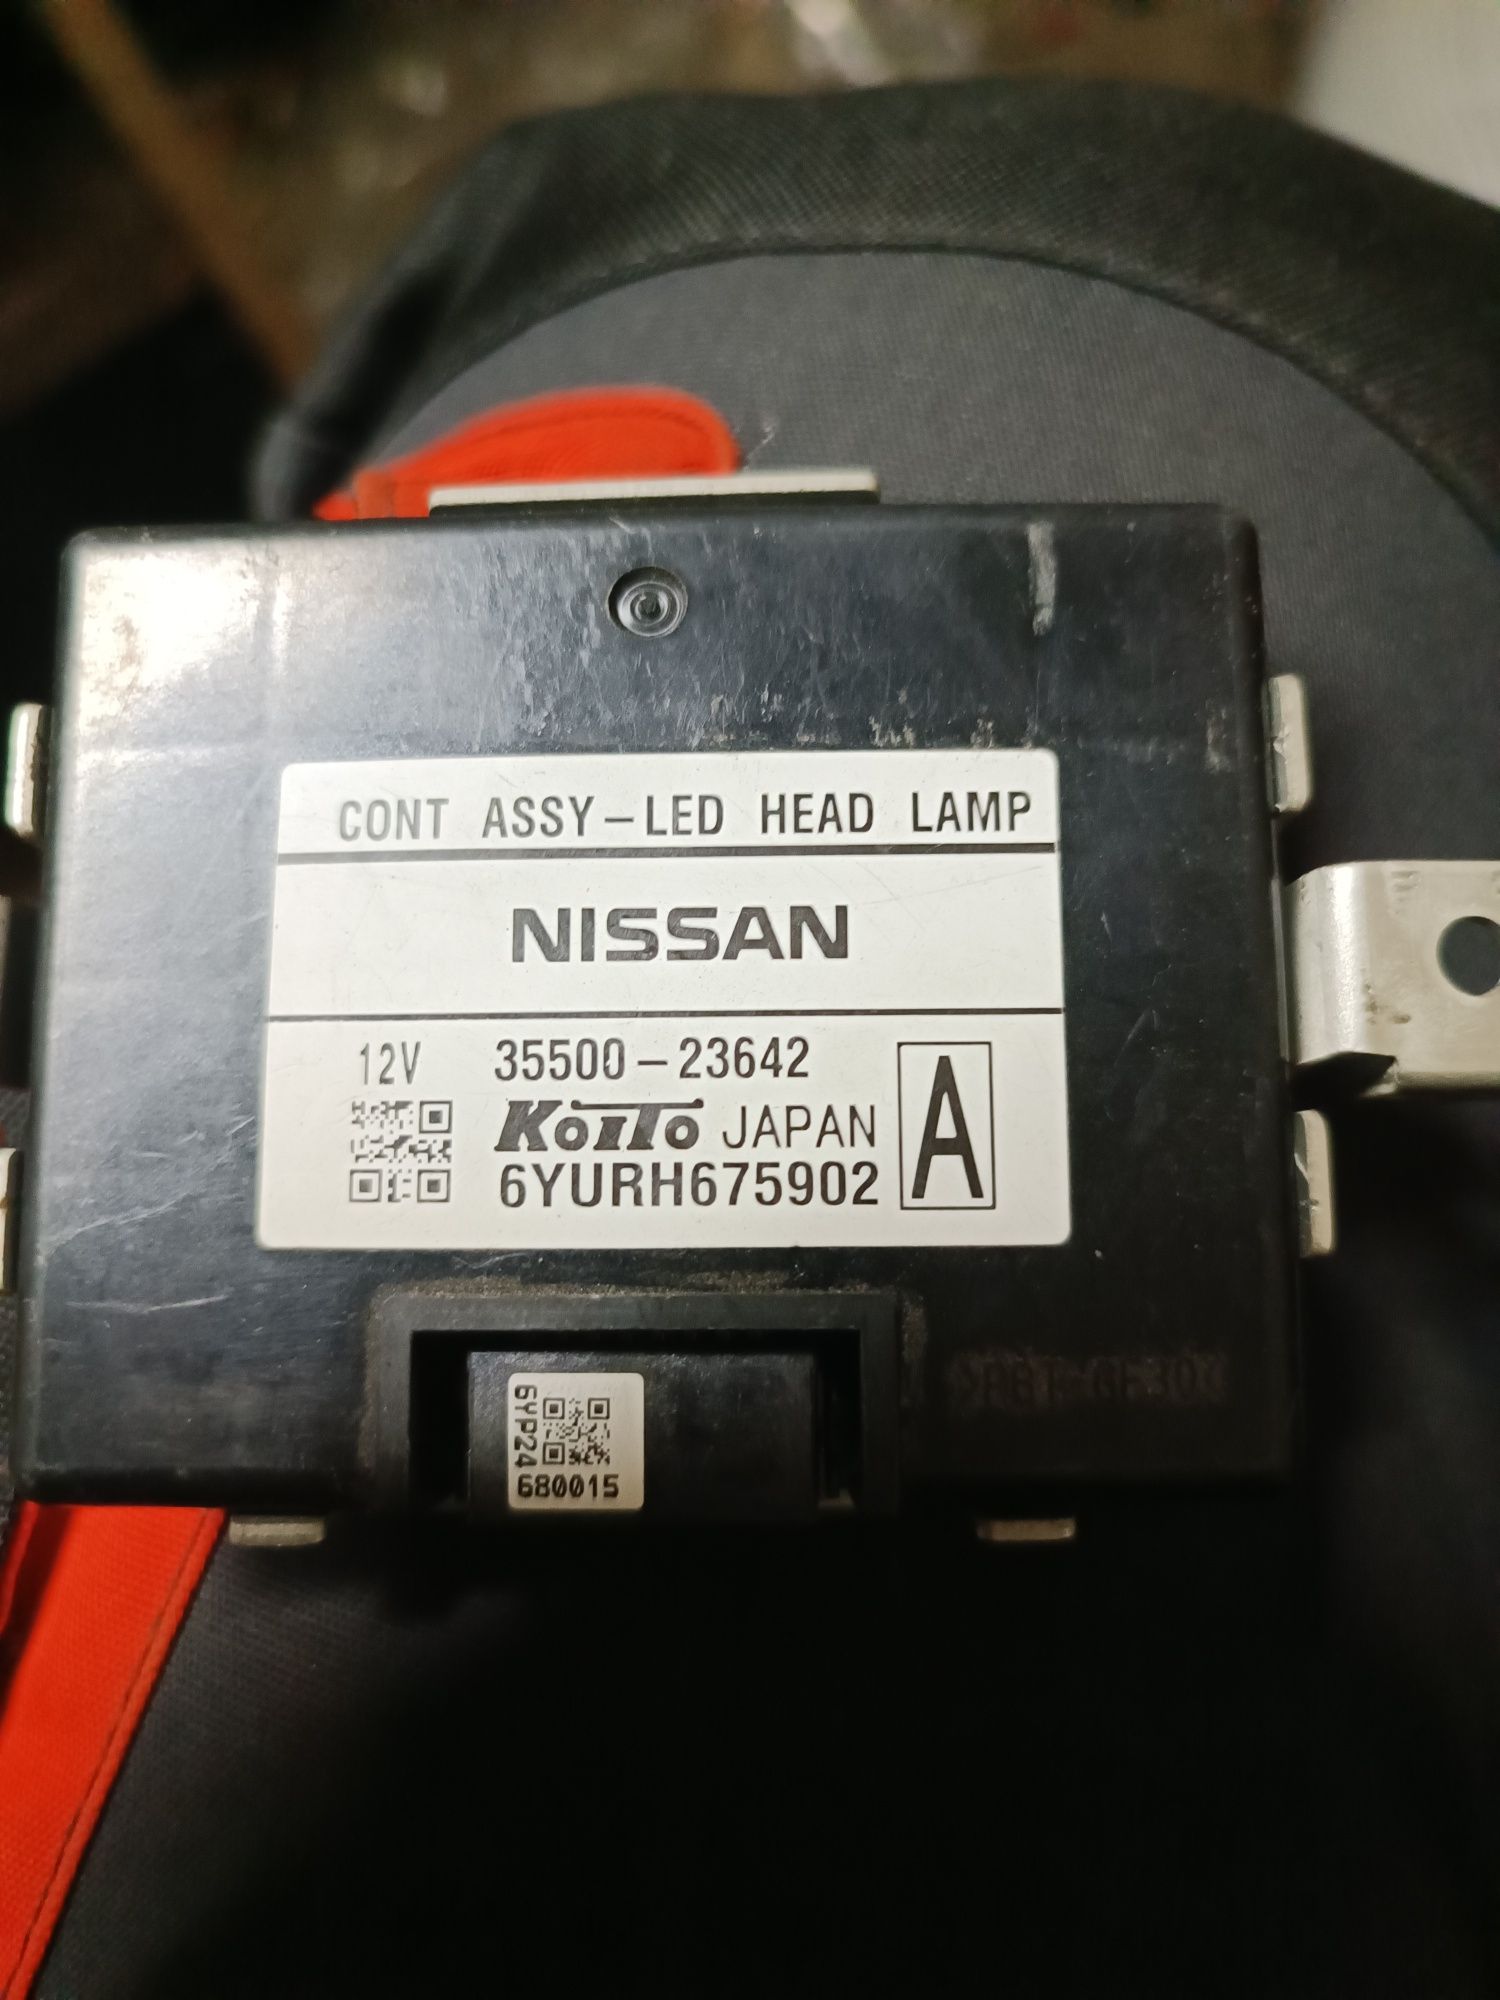 Блок керування LED, контролер NISSAN 35500-23642 Koito 6yurh675902